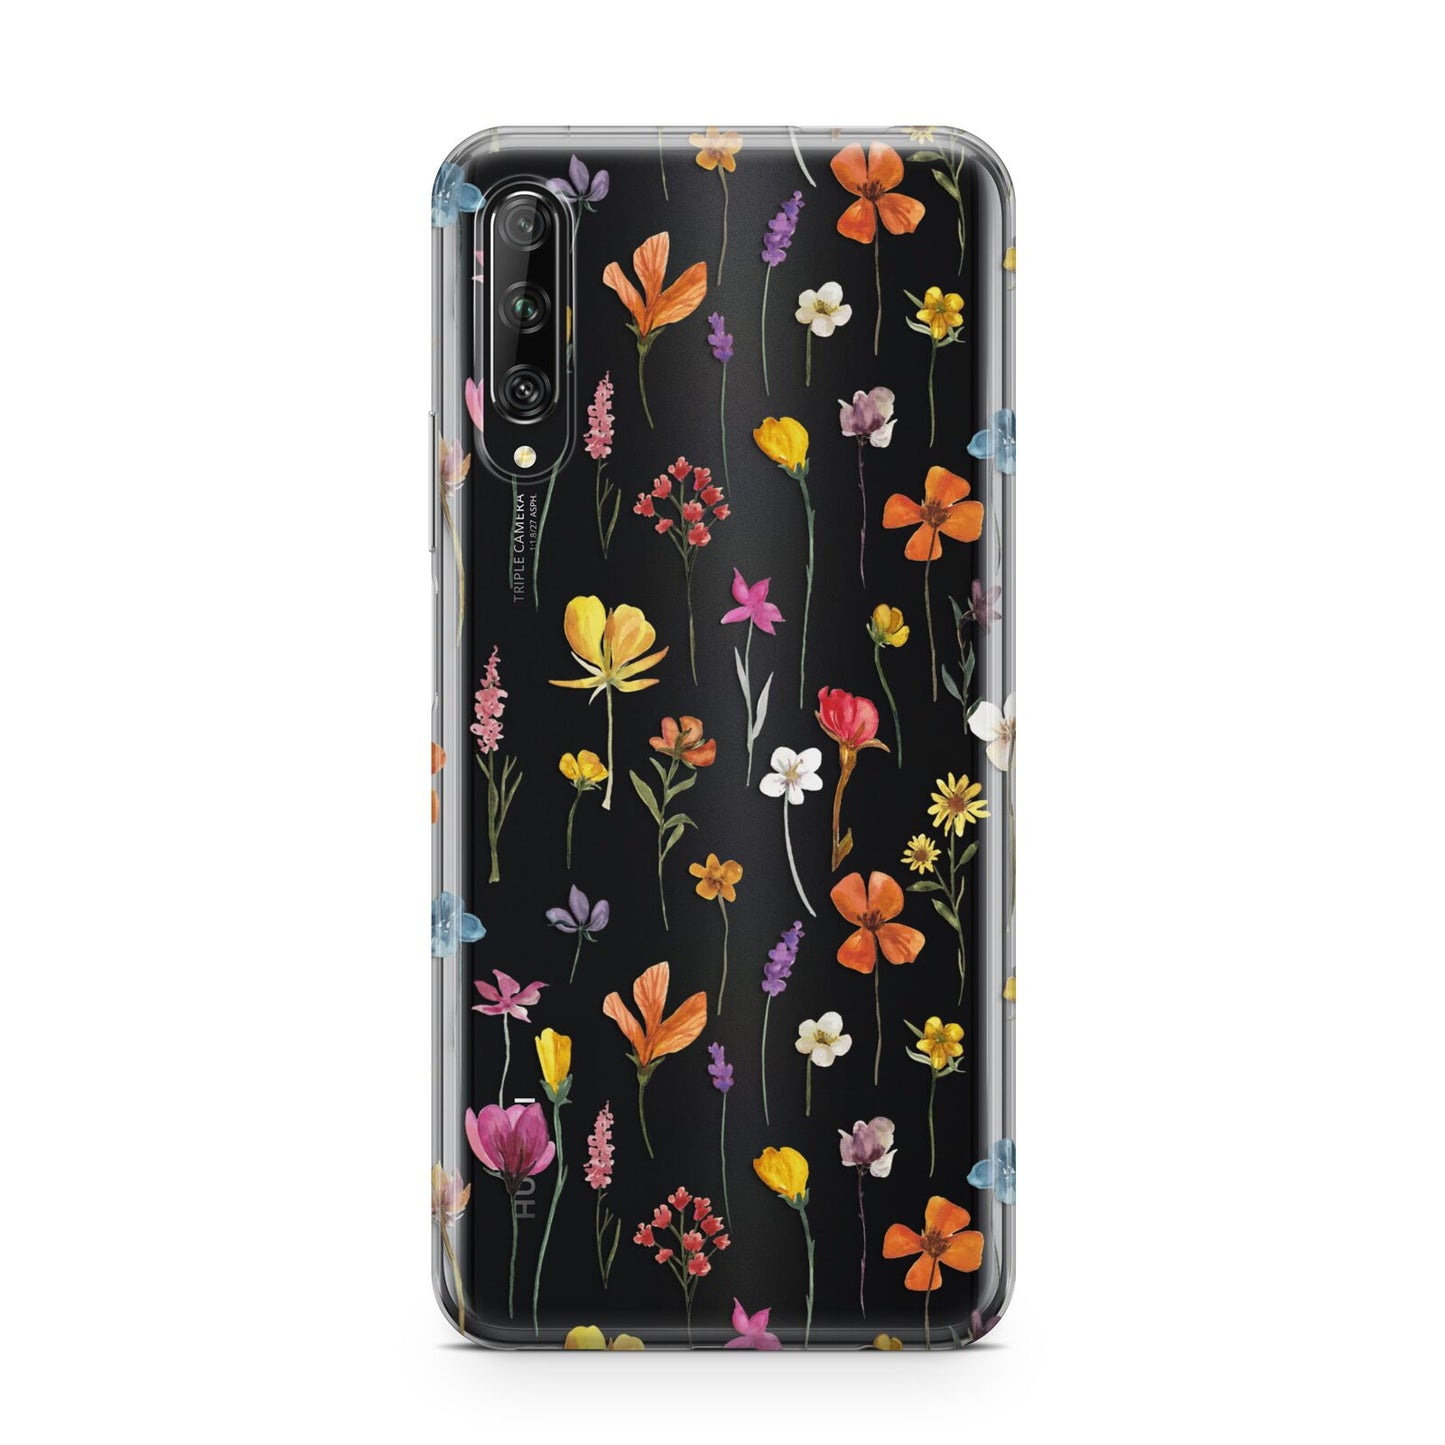 Botanical Floral Huawei P Smart Pro 2019